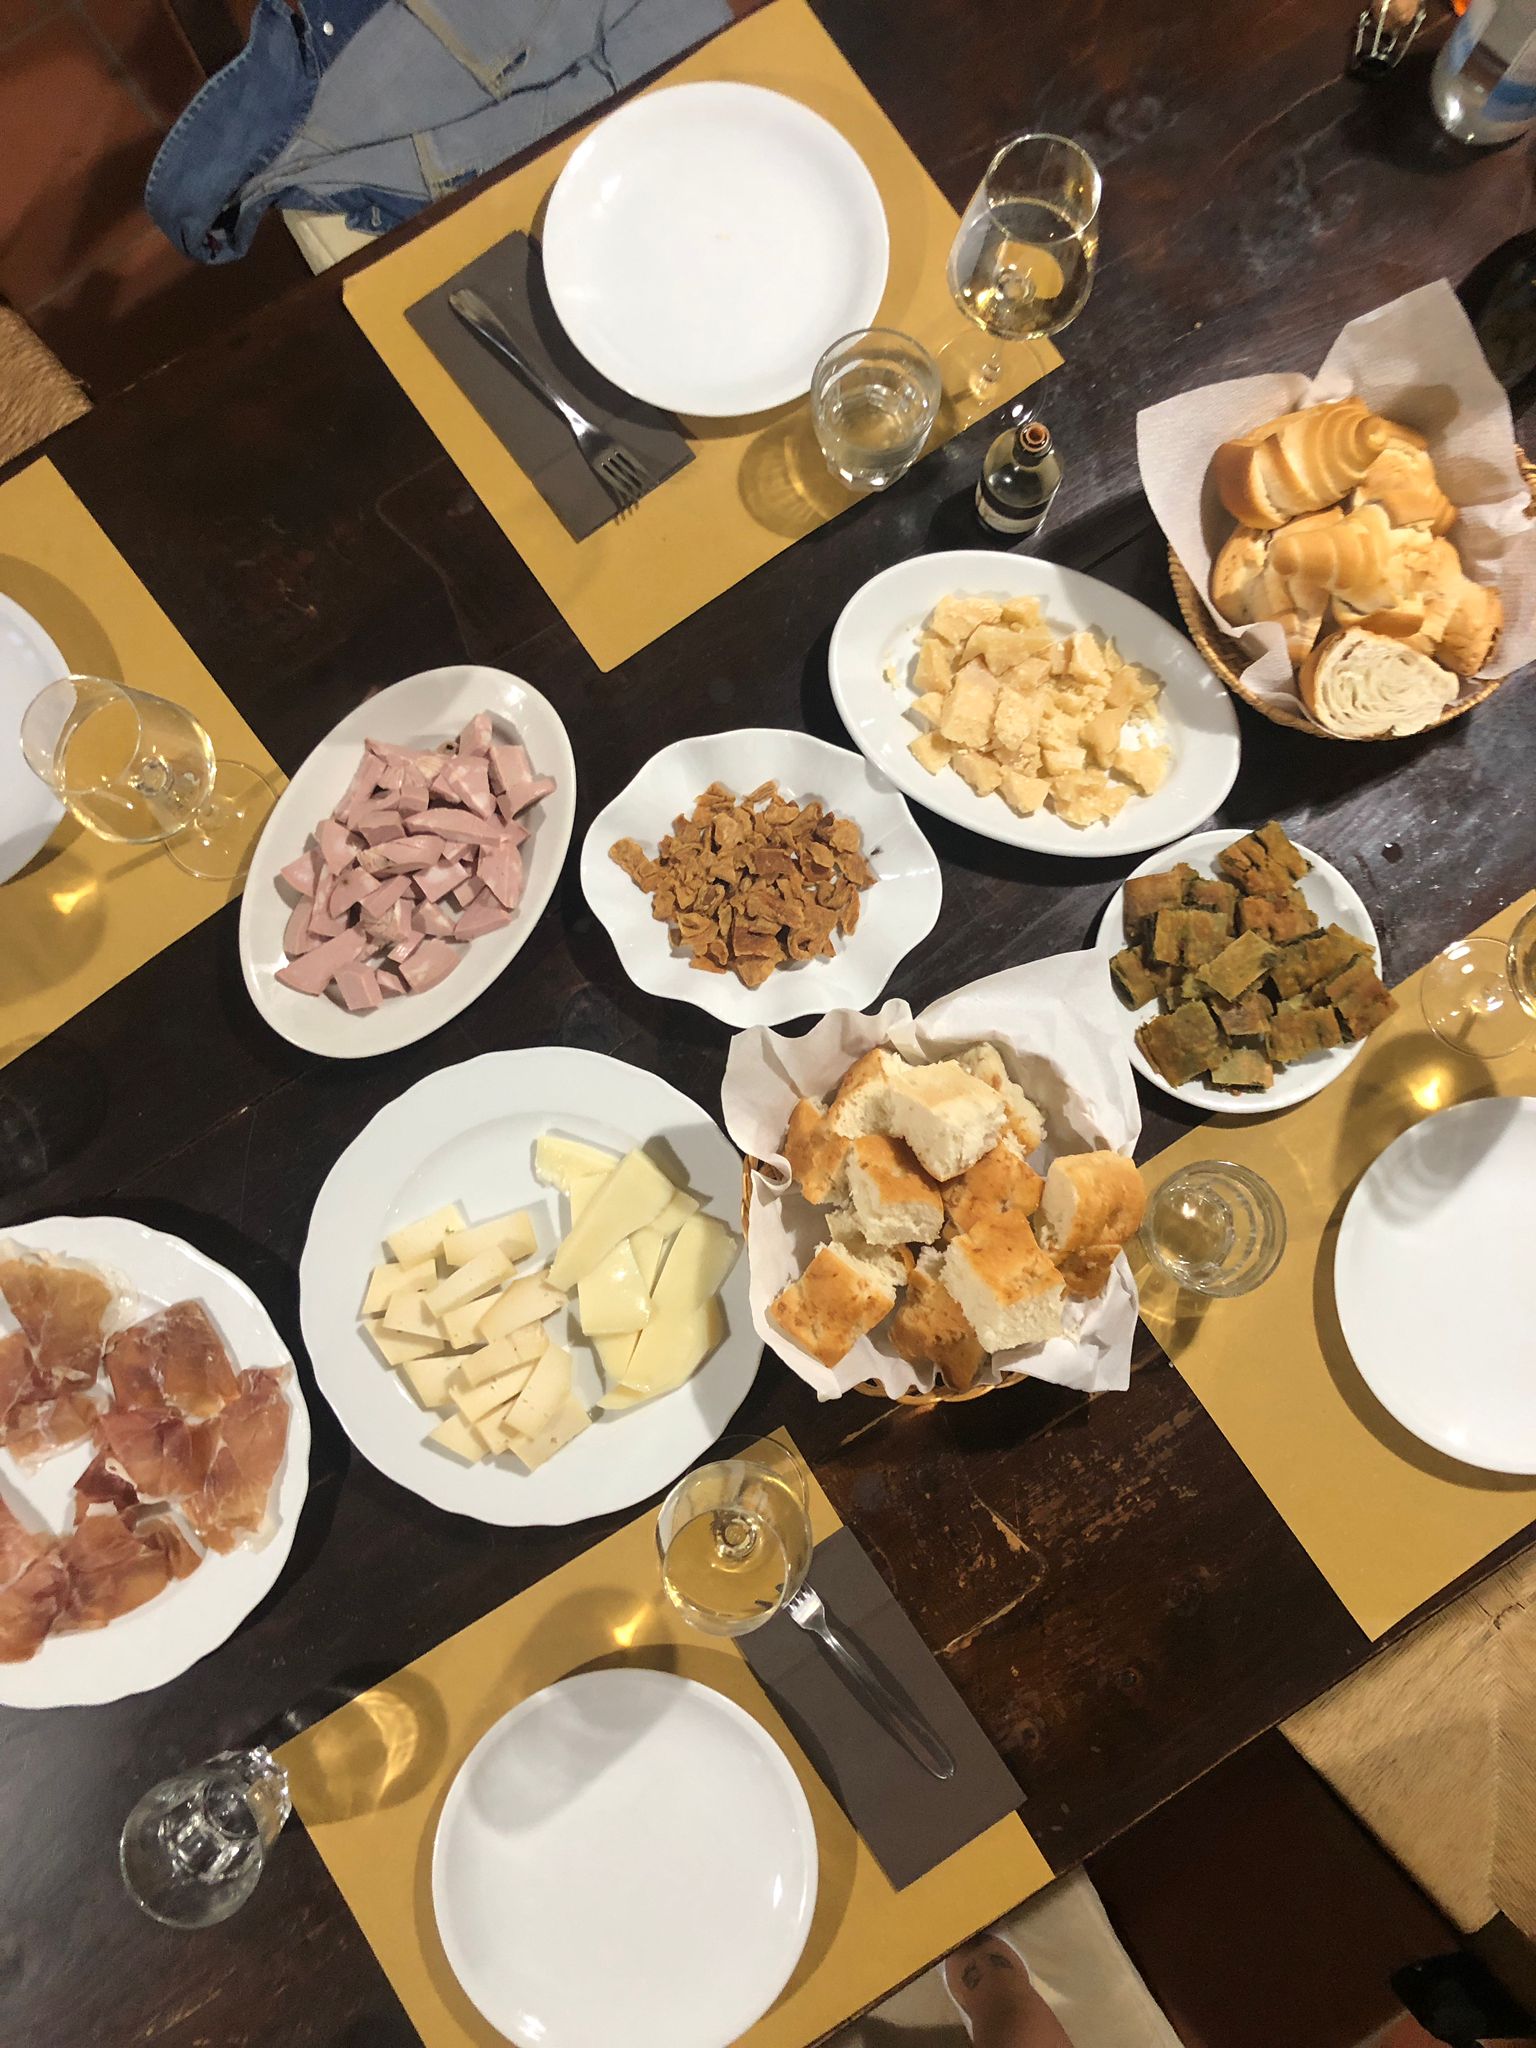 Visit with tasting and aperitif at Acetaia San Giacomo